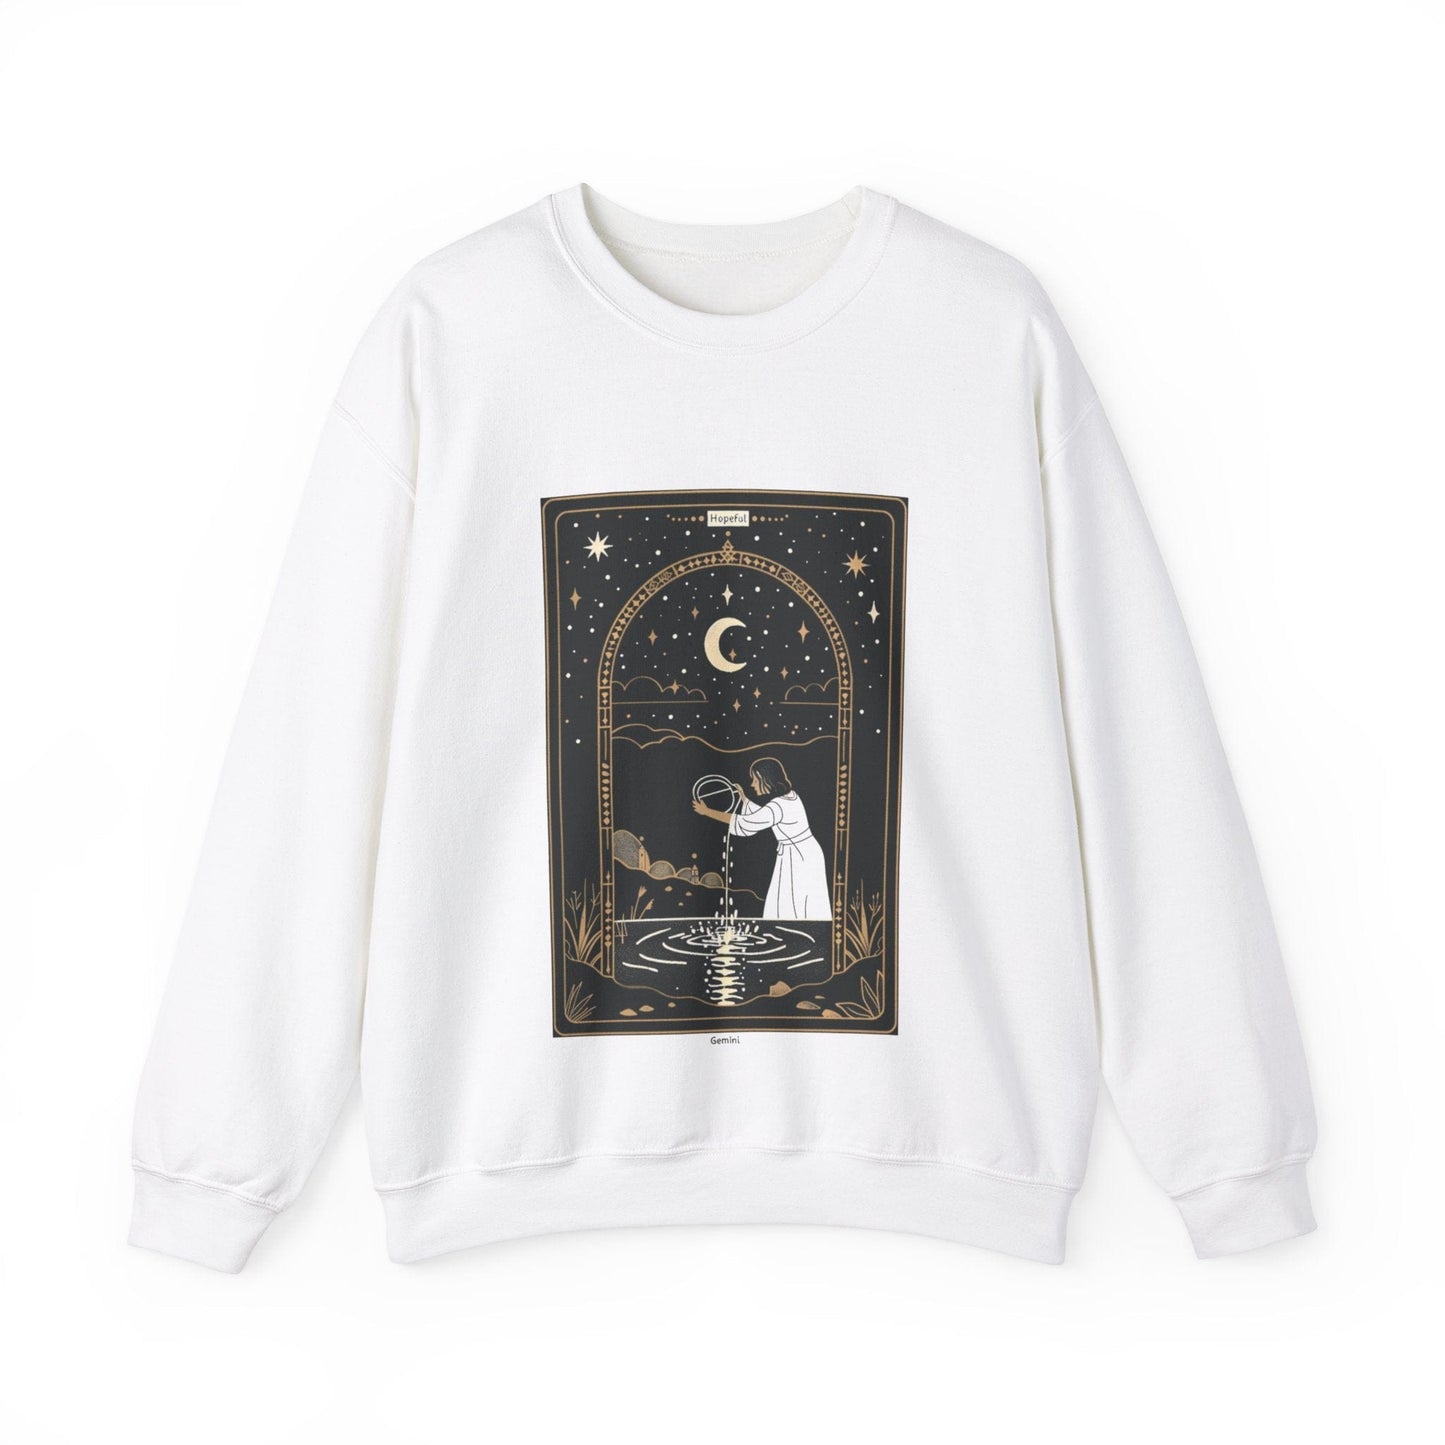 Sweatshirt S / White Hopeful Gemini Sweater